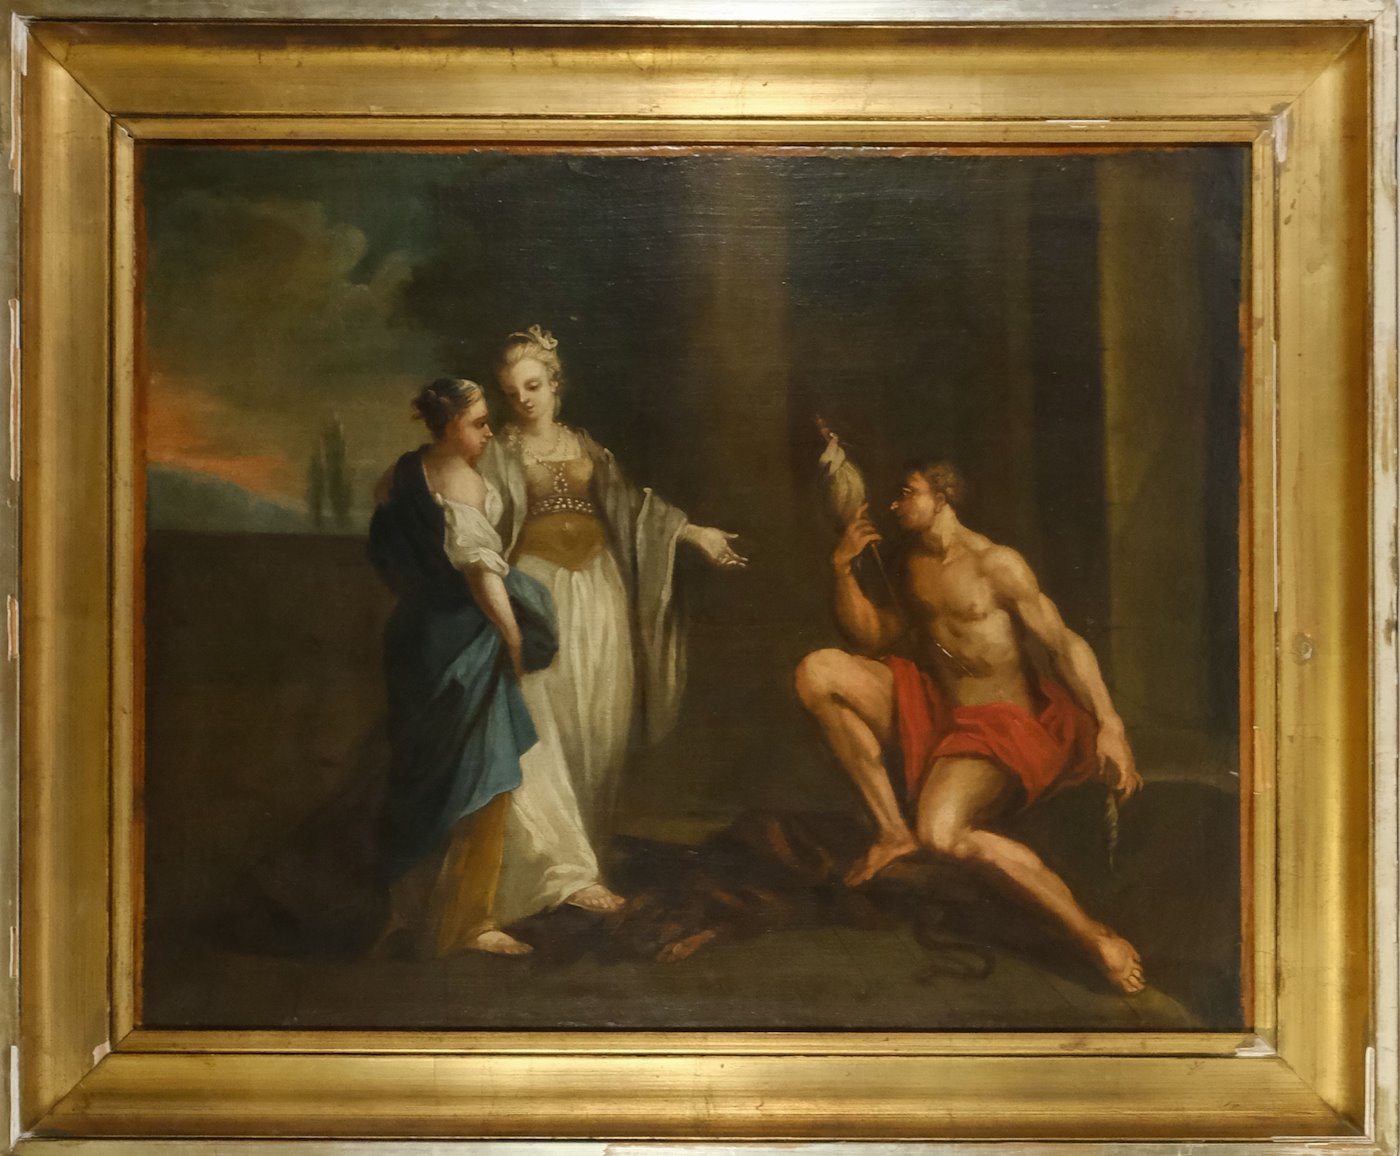 Nesignováno - Bájný výjev, západoevropský malíř 18. století